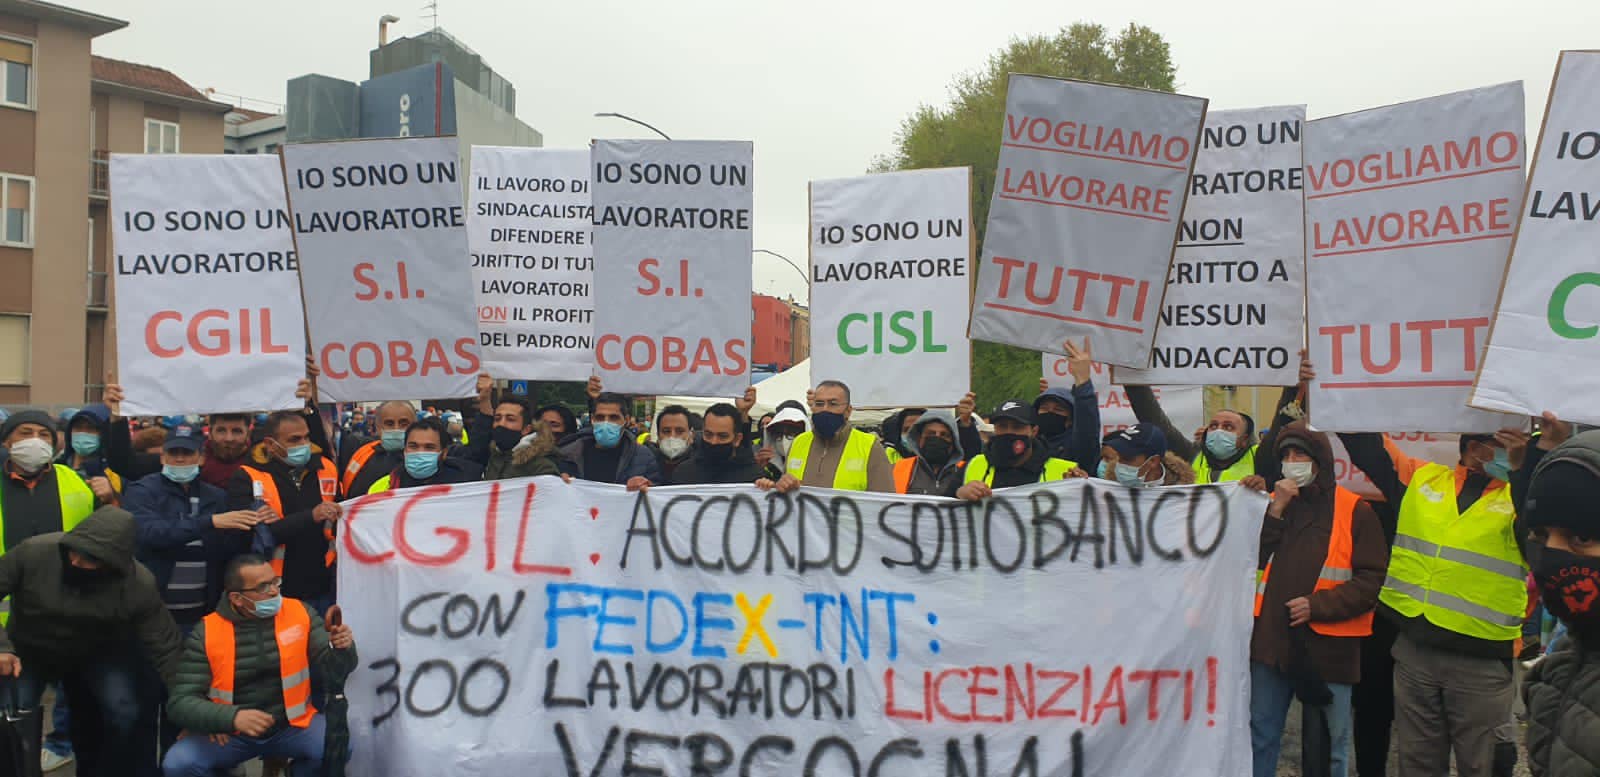 Italia Gobass verso lo sciopero dell’11 ottobre